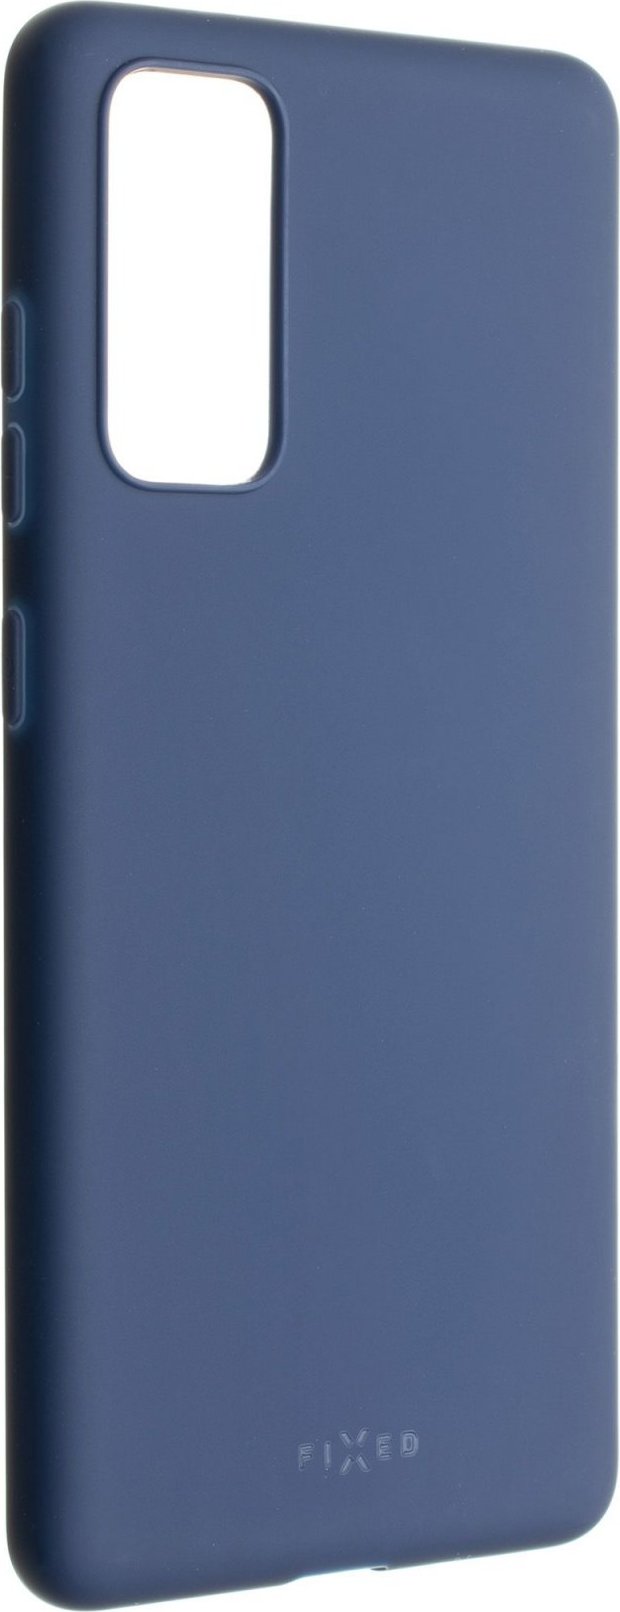 Zadní pogumovaný kryt FIXED Story pro Samsung Galaxy S20 FE/FE 5G, modrý